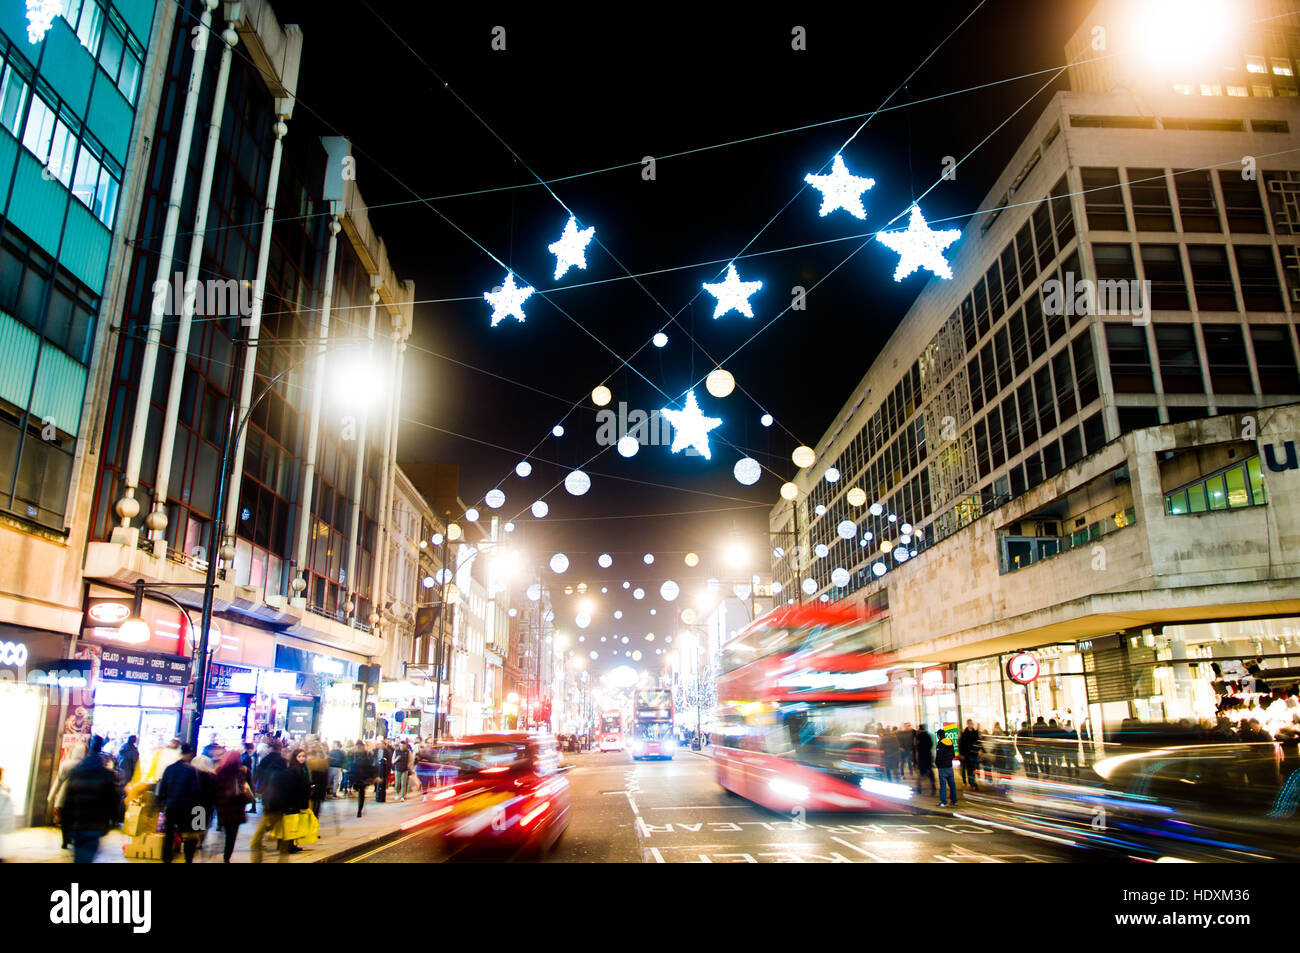 Christmas Lights, London 2016 Stock Photo - Alamy